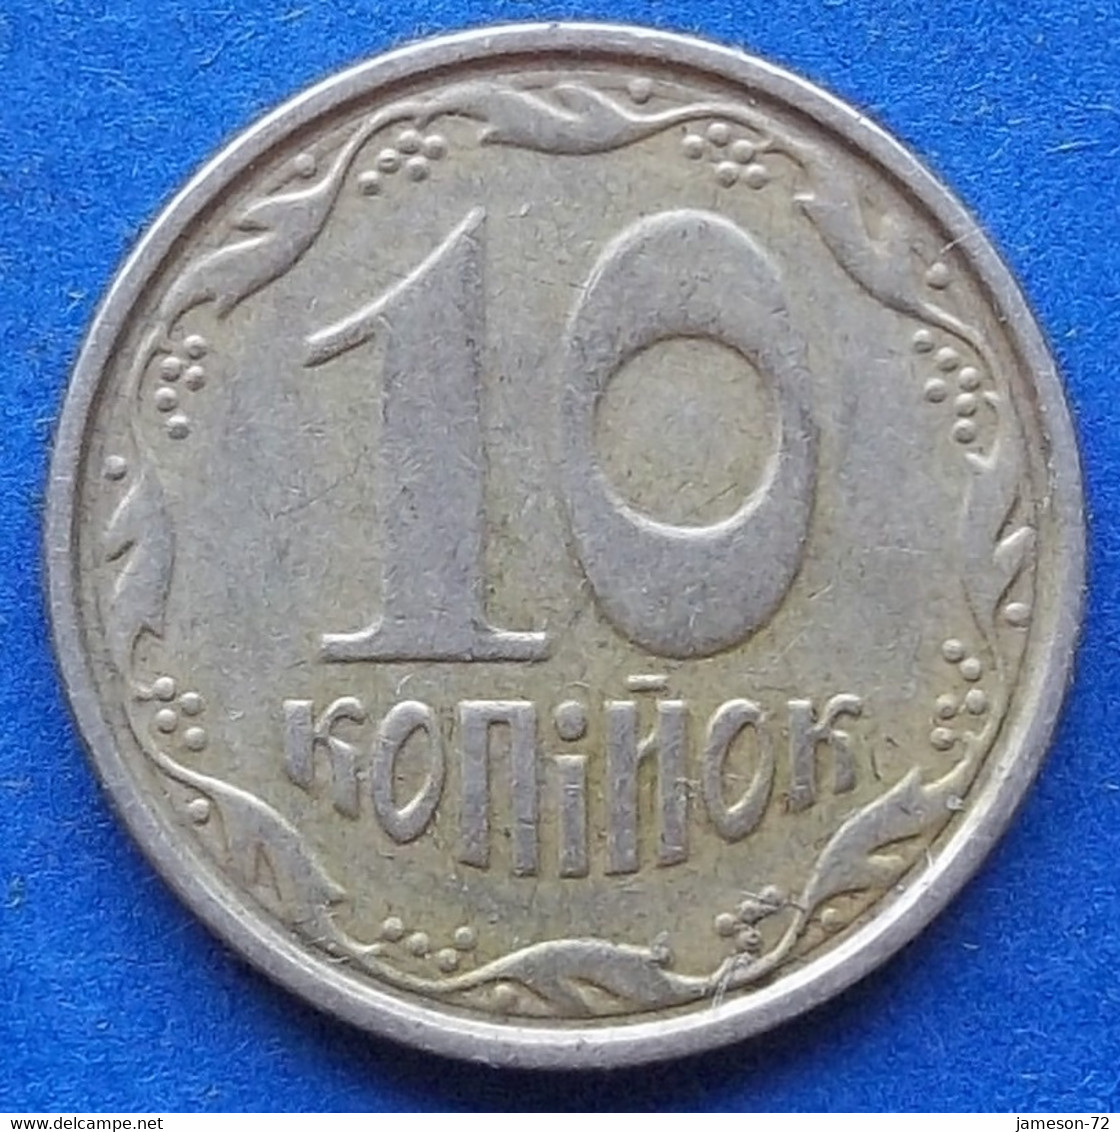 UKRAINE - 10 Kopiyok 2003 KM# 1.1b Reform Coinage (1996) - Edelweiss Coins - Ukraine